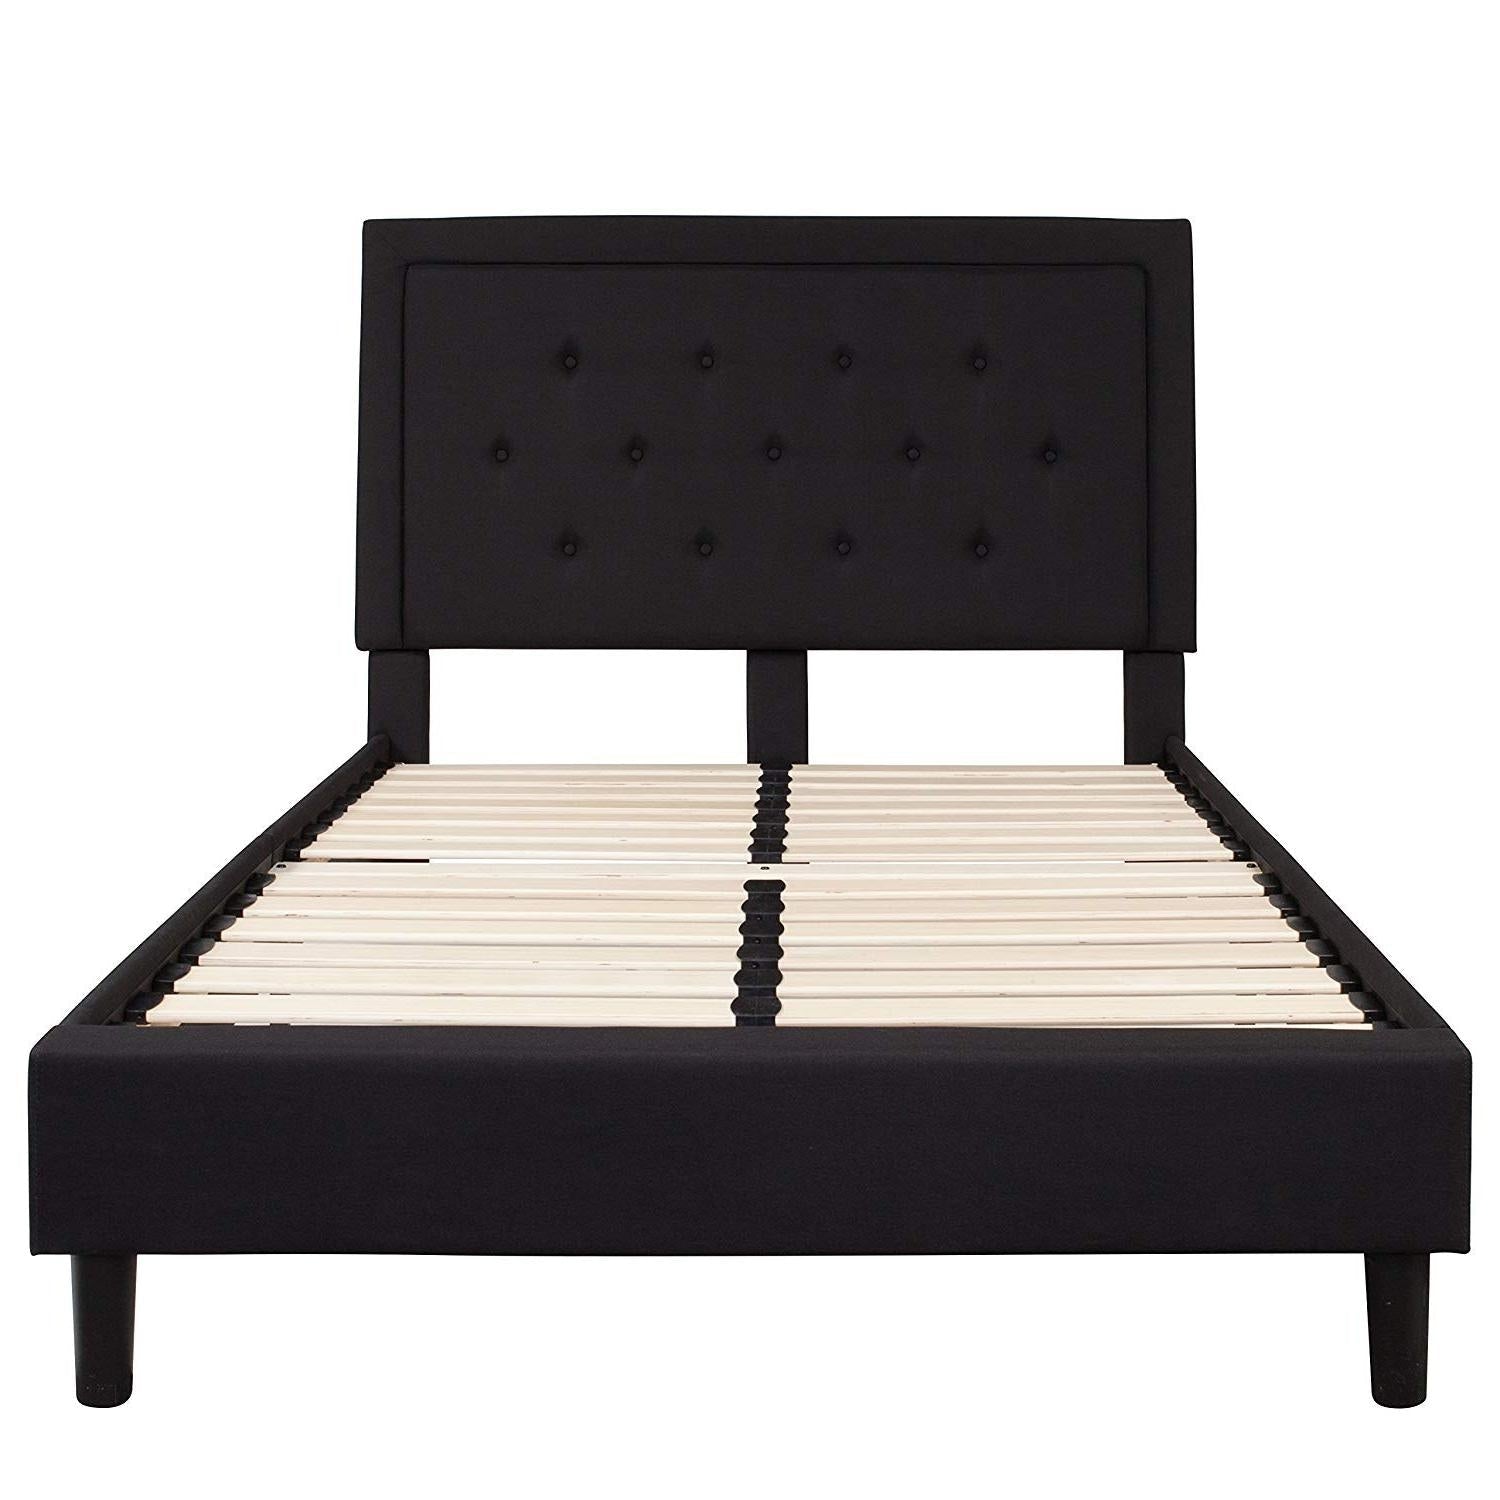 Bedroom > Bed Frames > Platform Beds - Full Size Black Fabric Upholstered Platform Bed Frame With Headboard